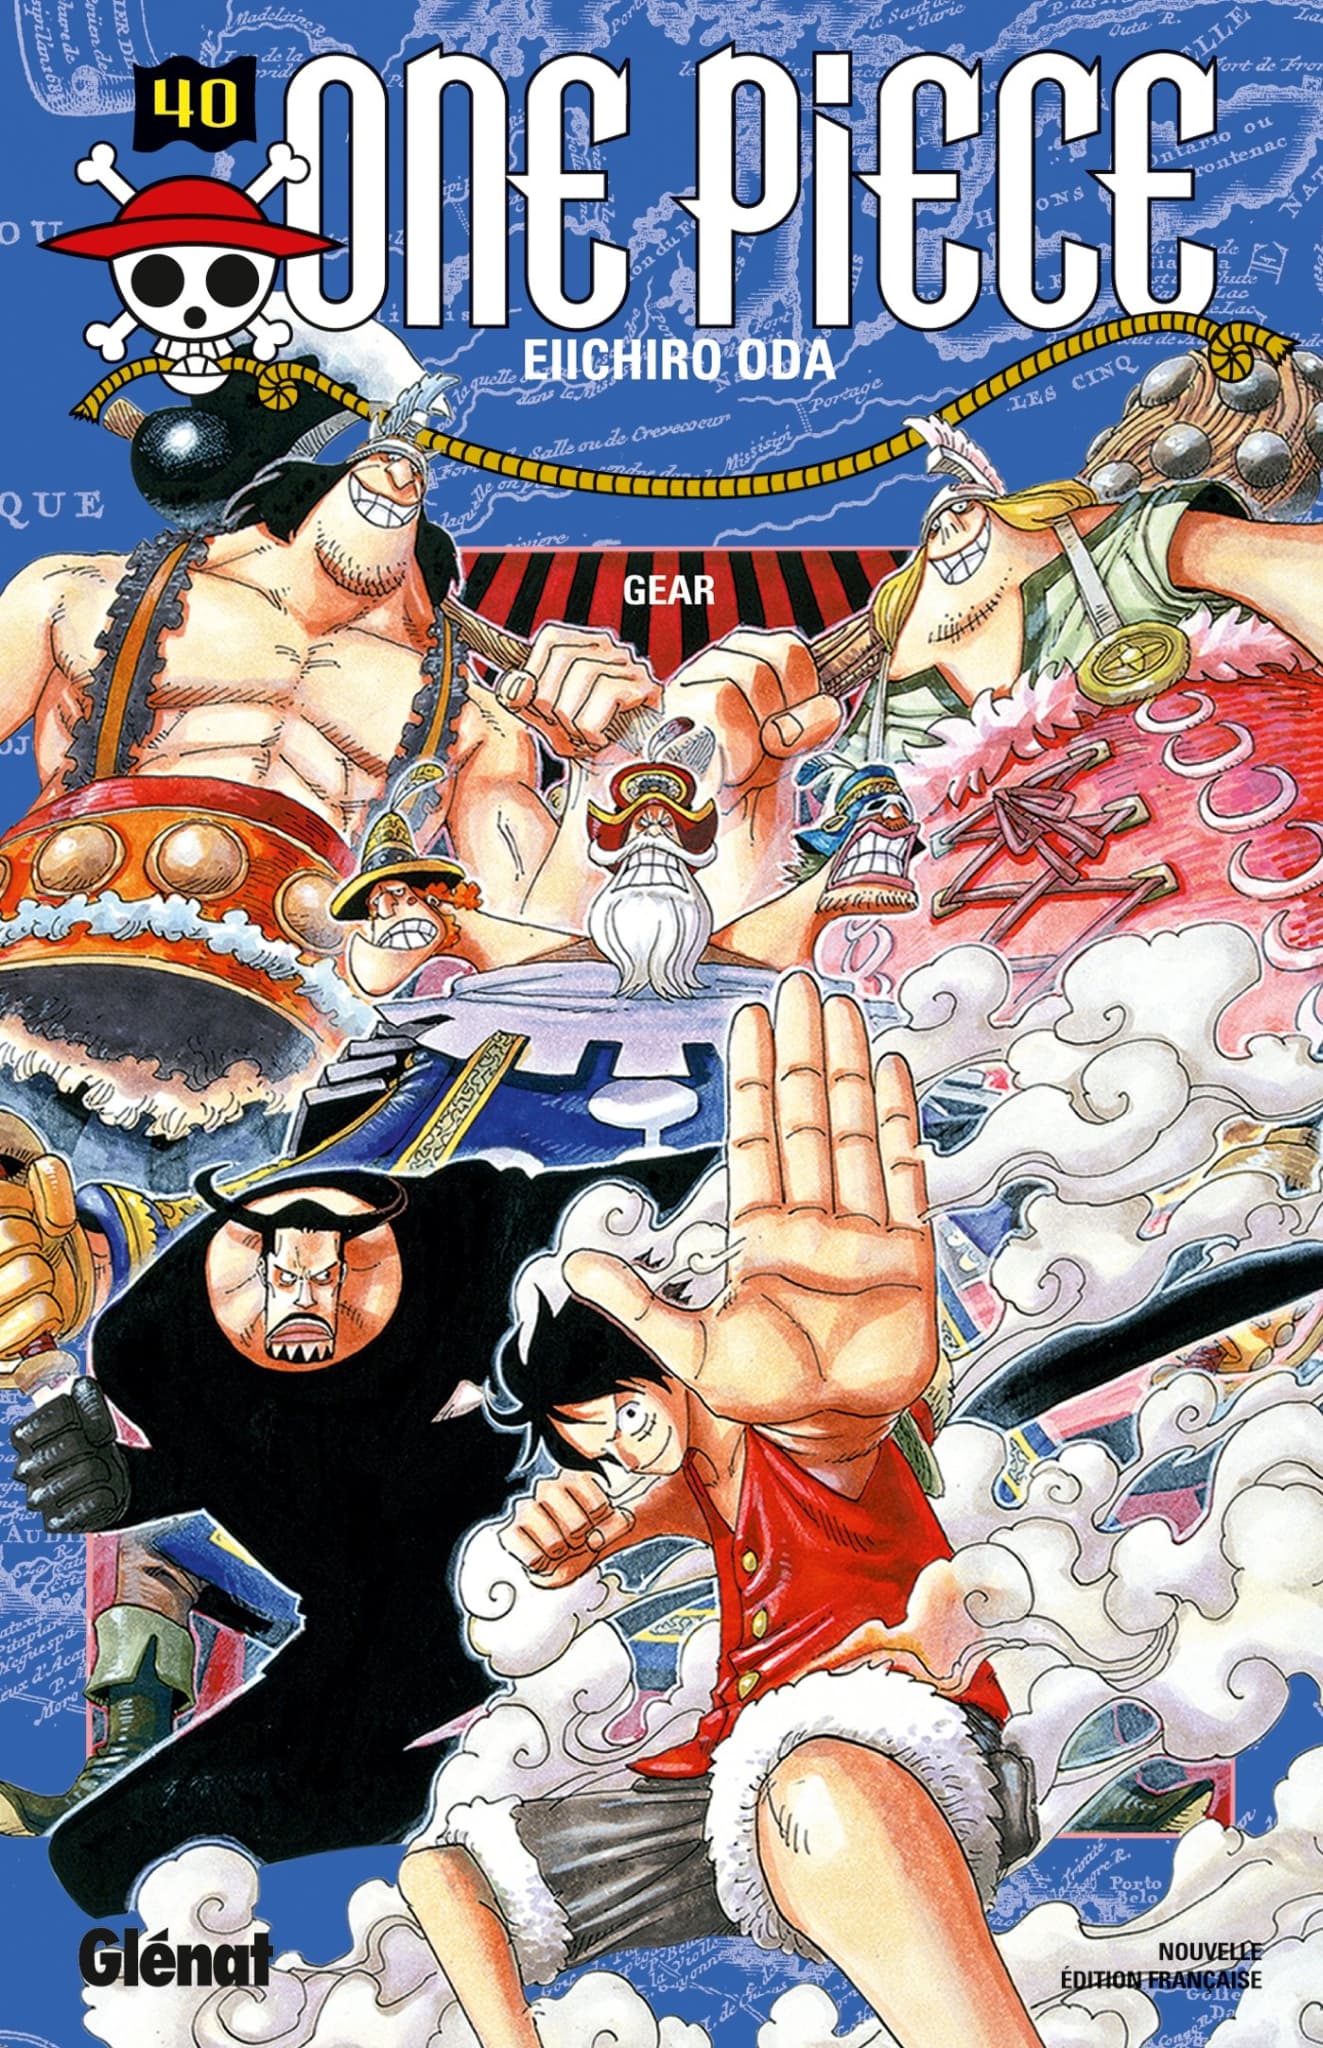 Re)découvre One Piece avec les coffrets ! Quel est ton arc préféré ?